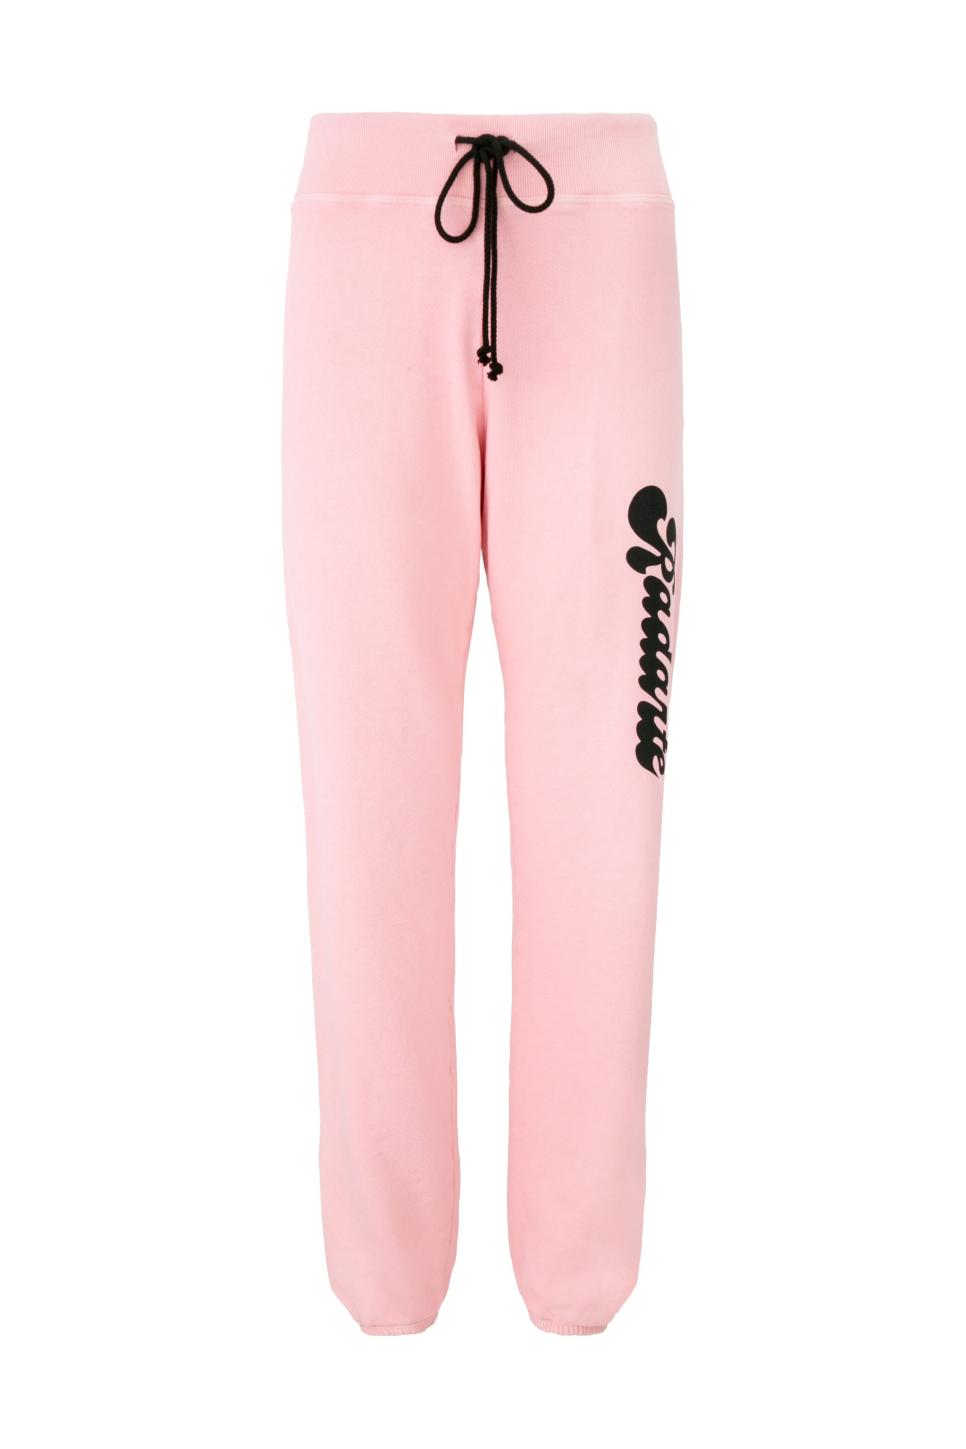 rx-rodarterodarte-womens-radarte-bubble-font-logo-pink-sweatpants.jpeg